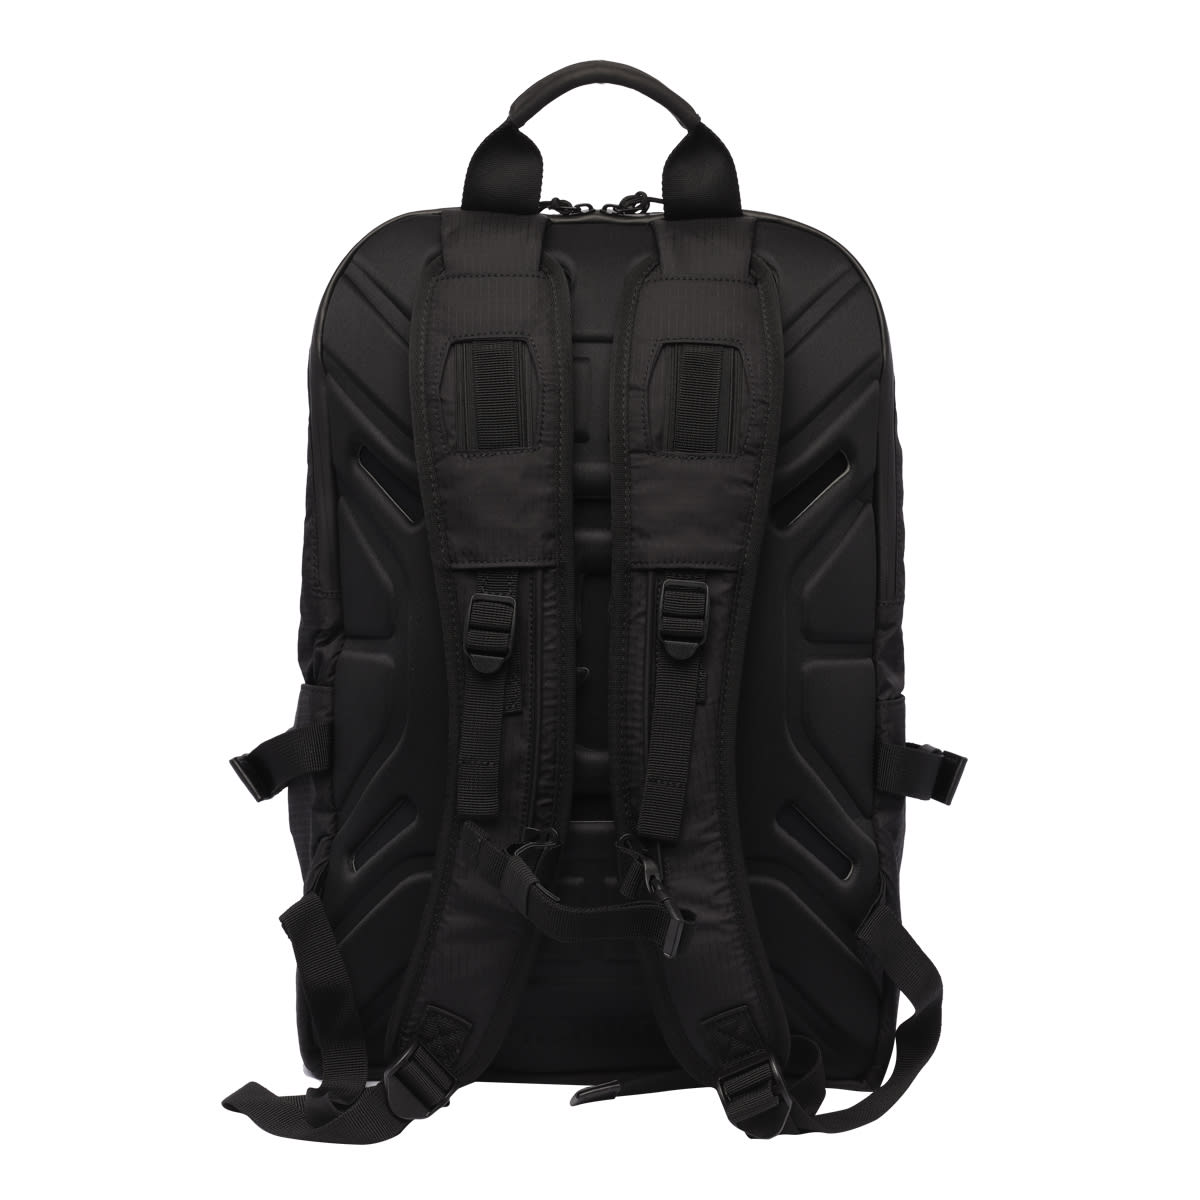 Shop Premiata Ventura Backpack In Black